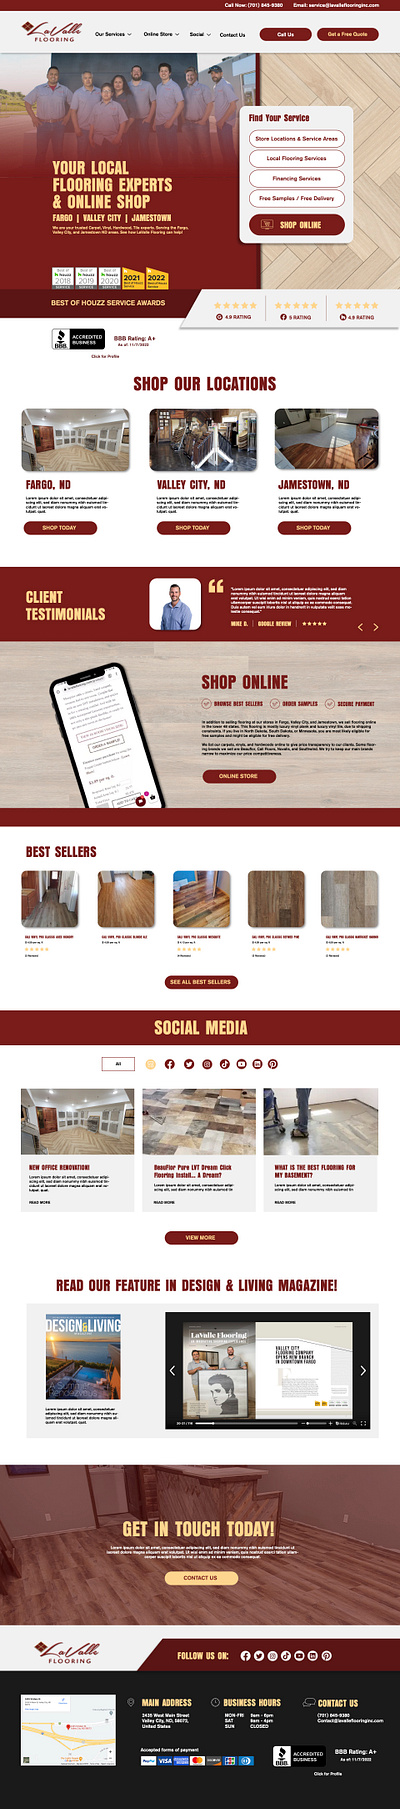 LaValle Flooring - Web Design web design